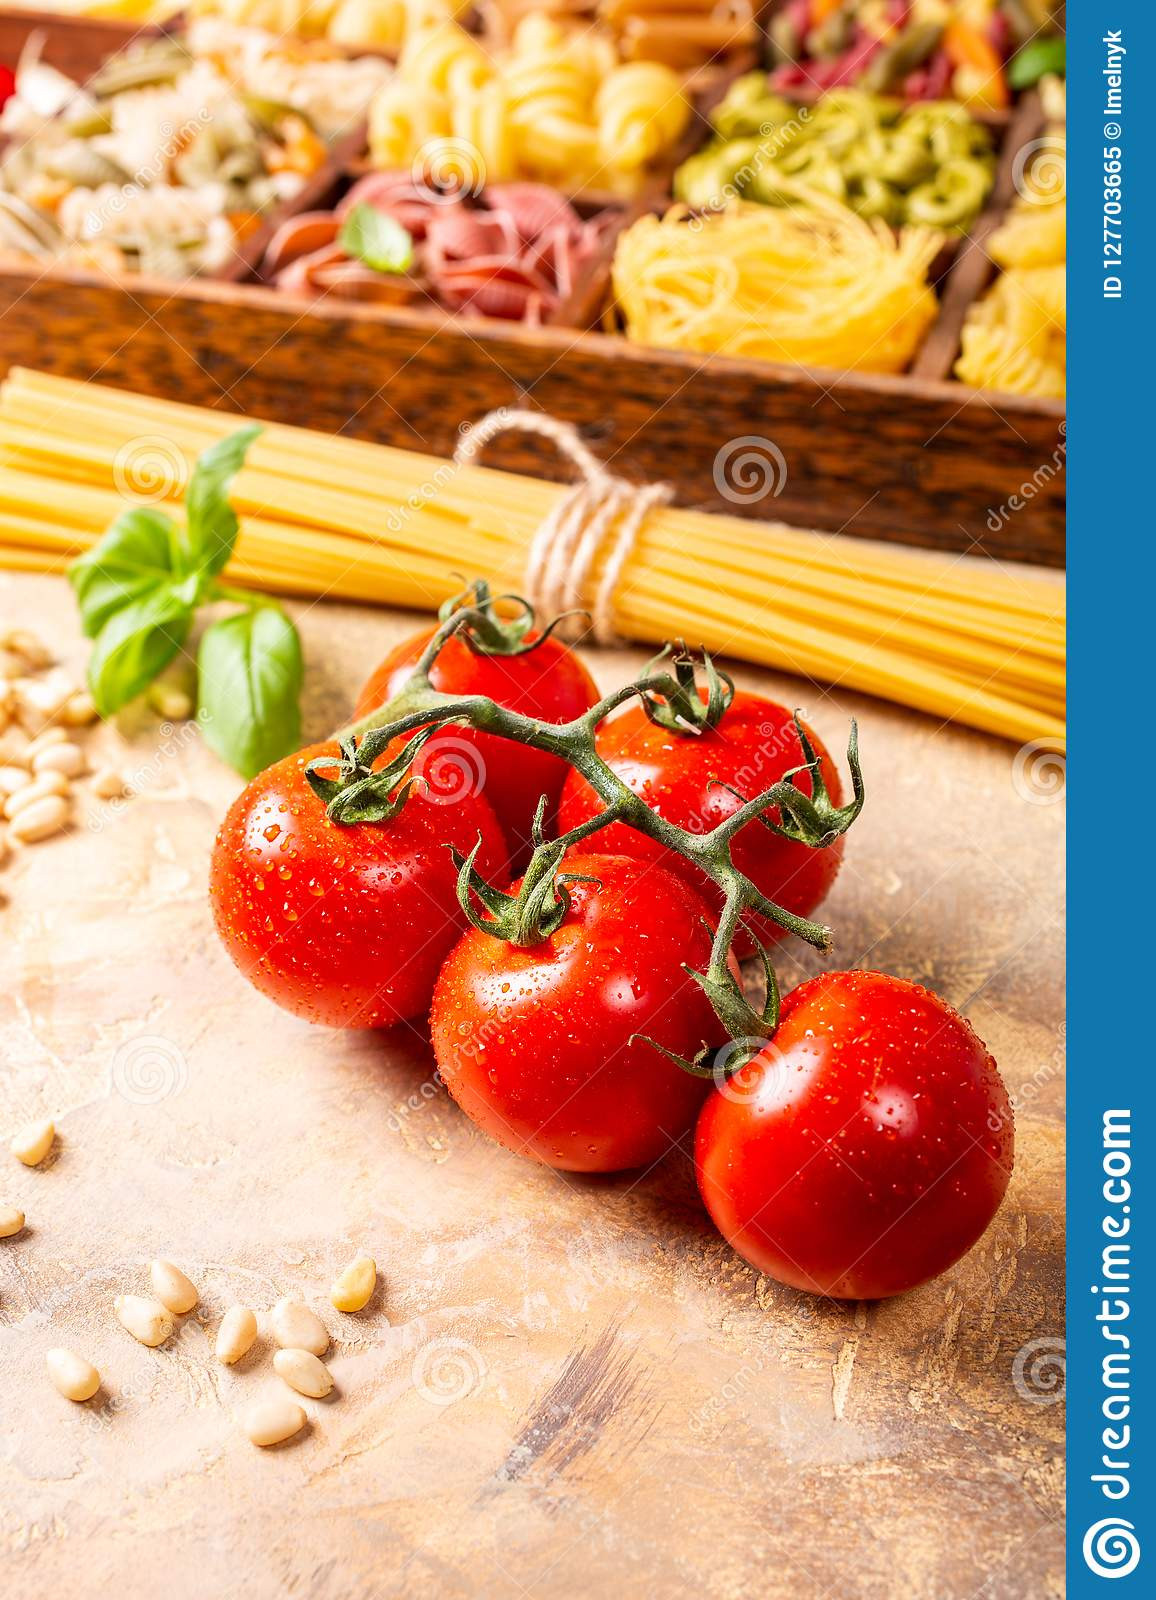 Homemade Spaghetti Sauce From Fresh Tomatoes Real Italian
 Fresh Tomatoes For Homemade Classic Italian Pasta Sauce